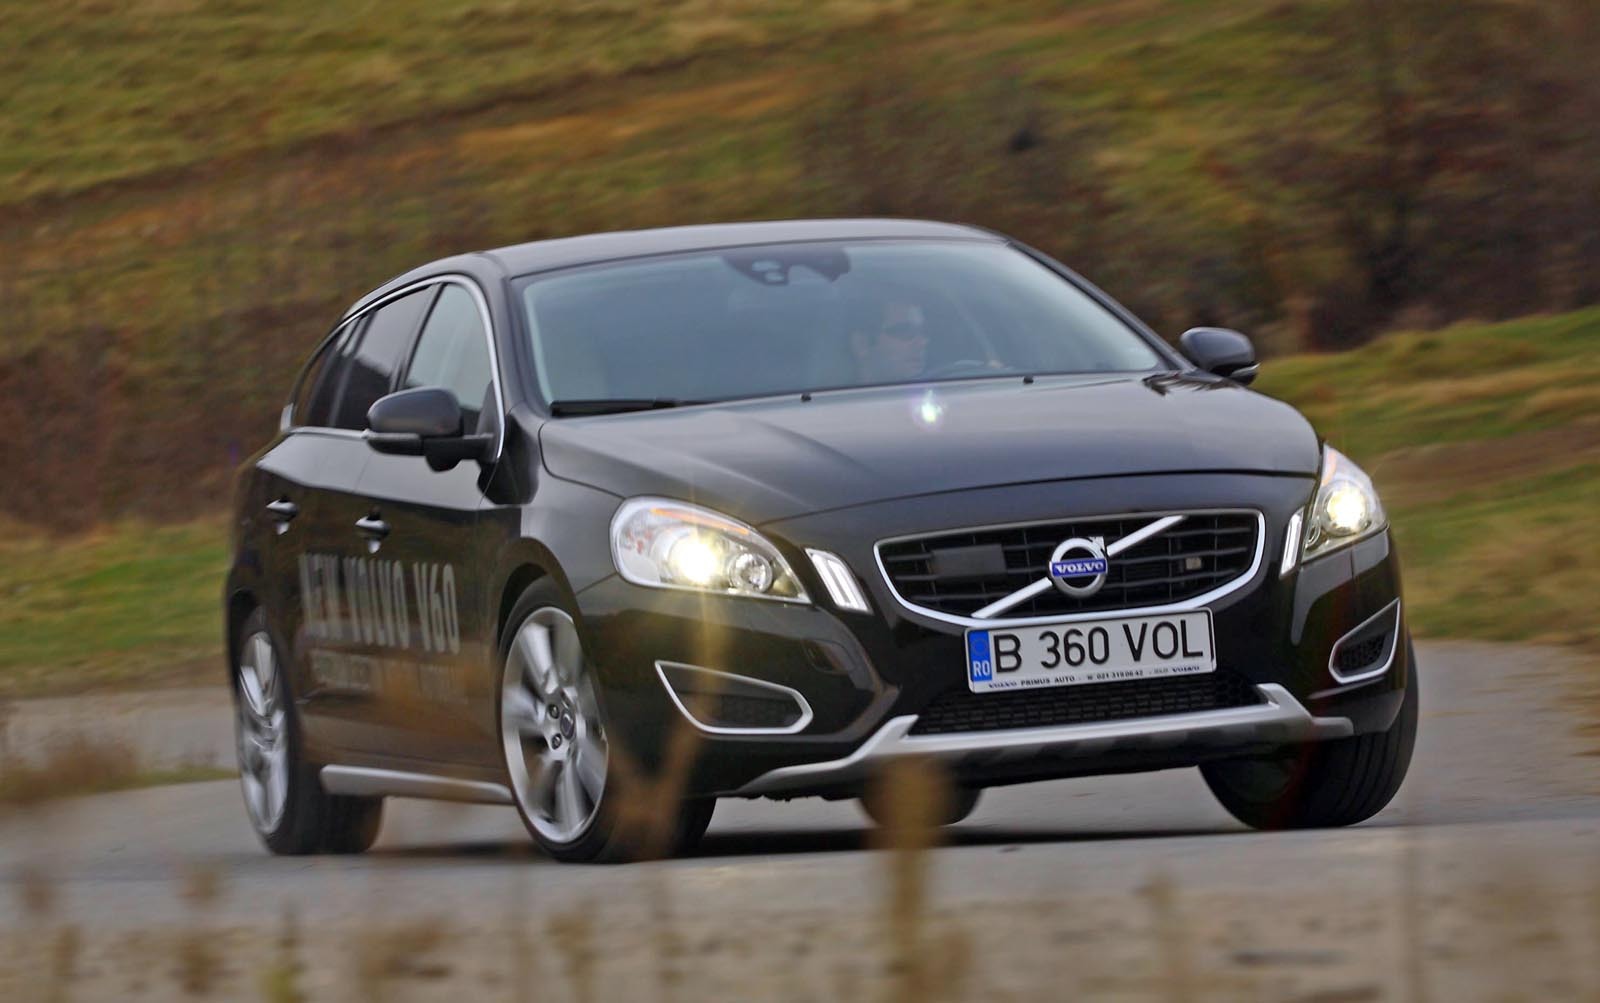 Volvo V60 are o directie perfectibila, cu un feedback insuficient in regim sportiv